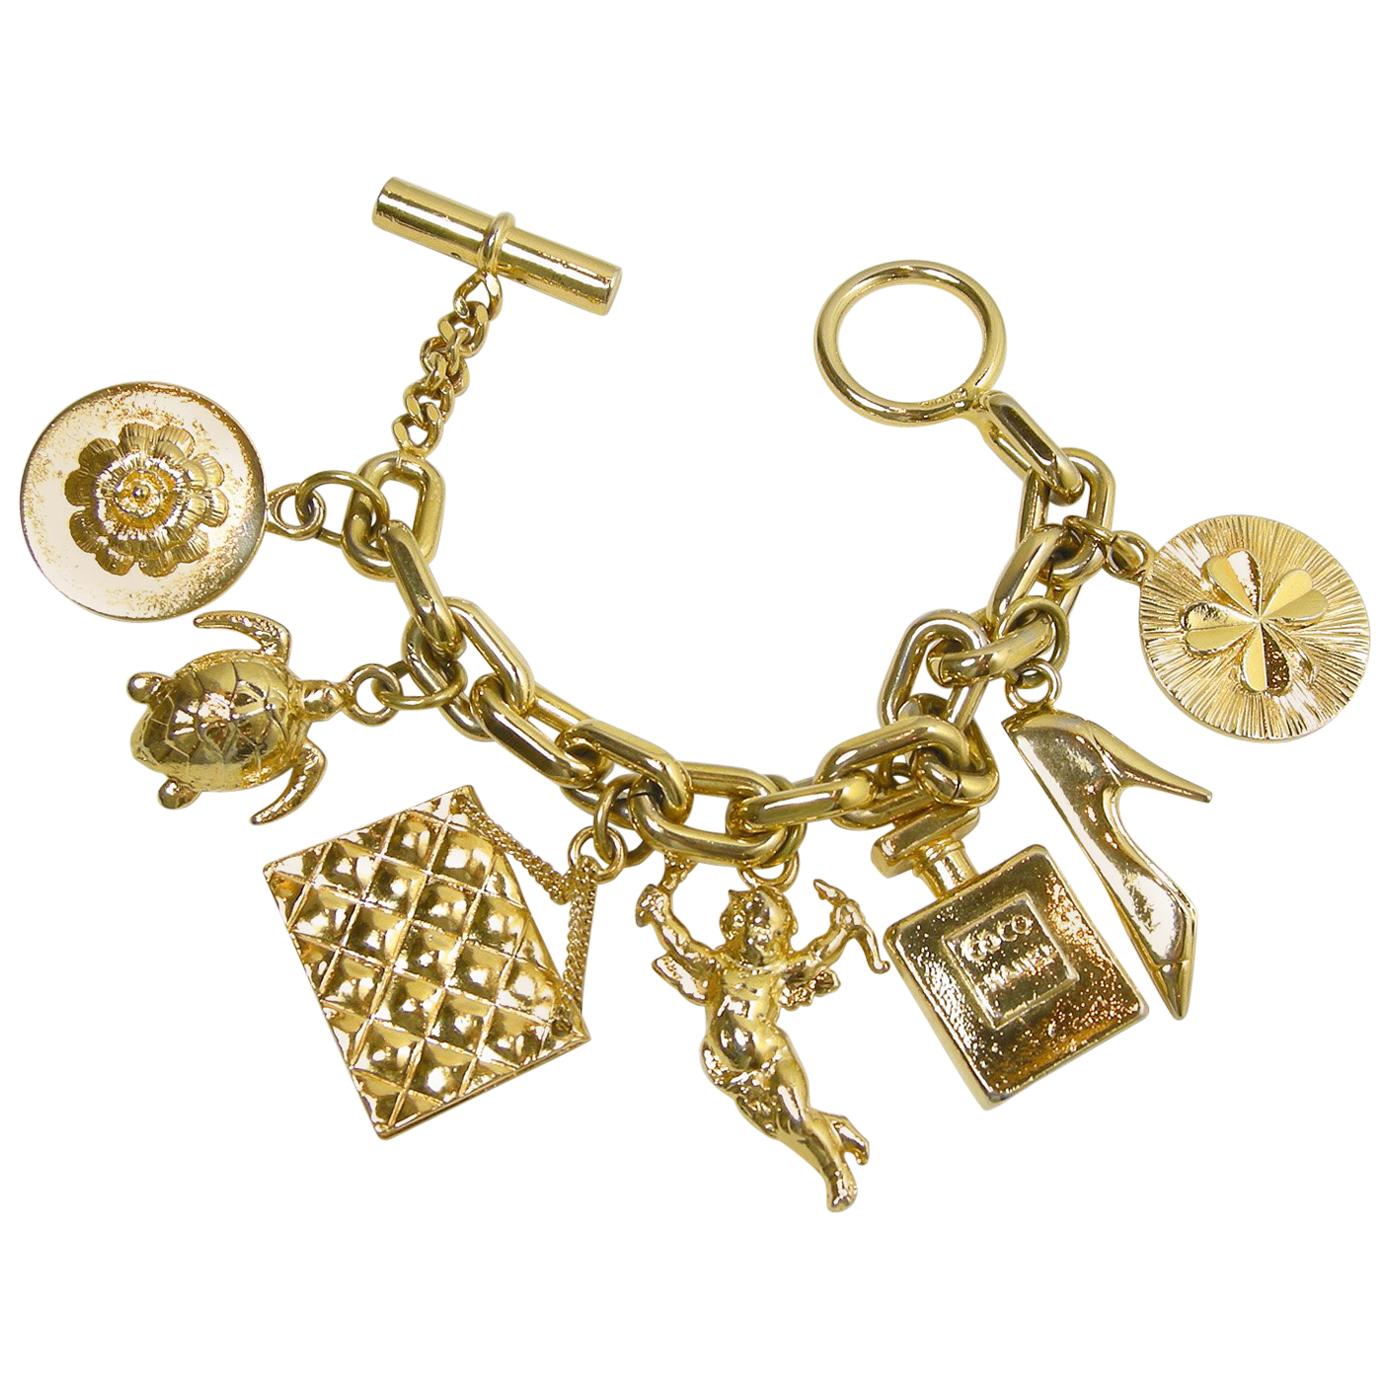 Vintage Famous Chanel Charm Bracelet